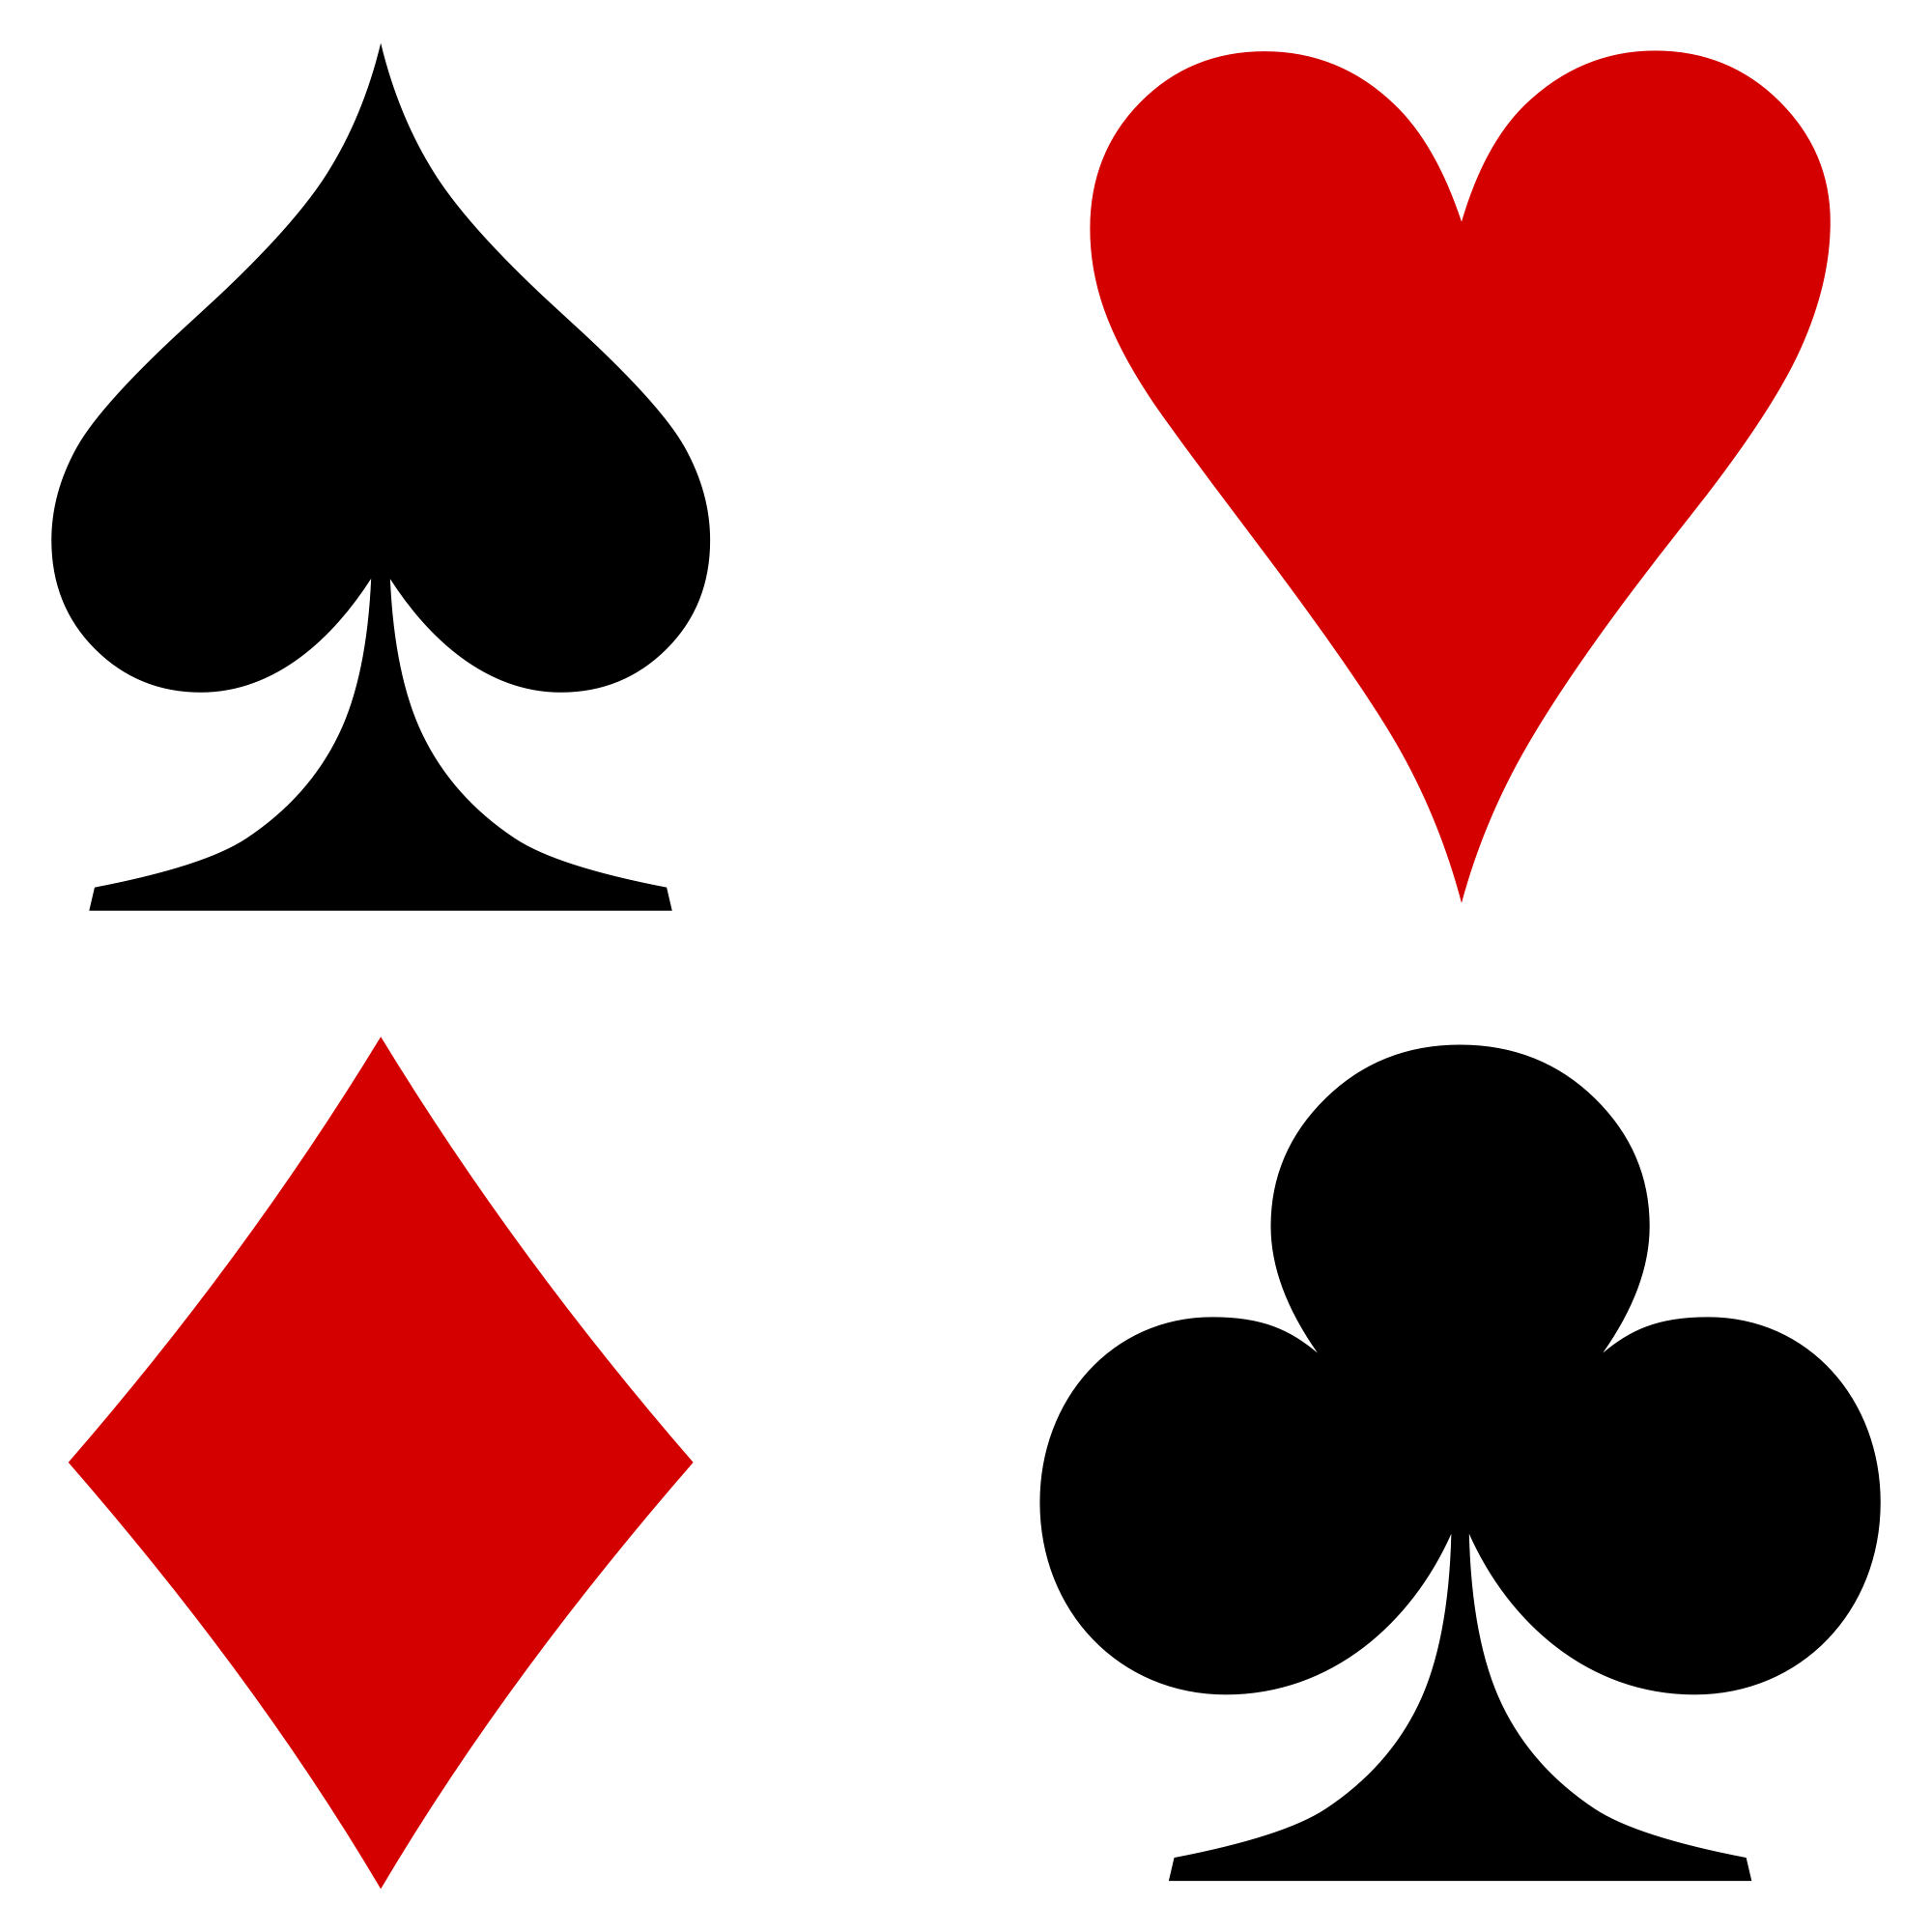 deck-of-card-symbols-cliparts-co